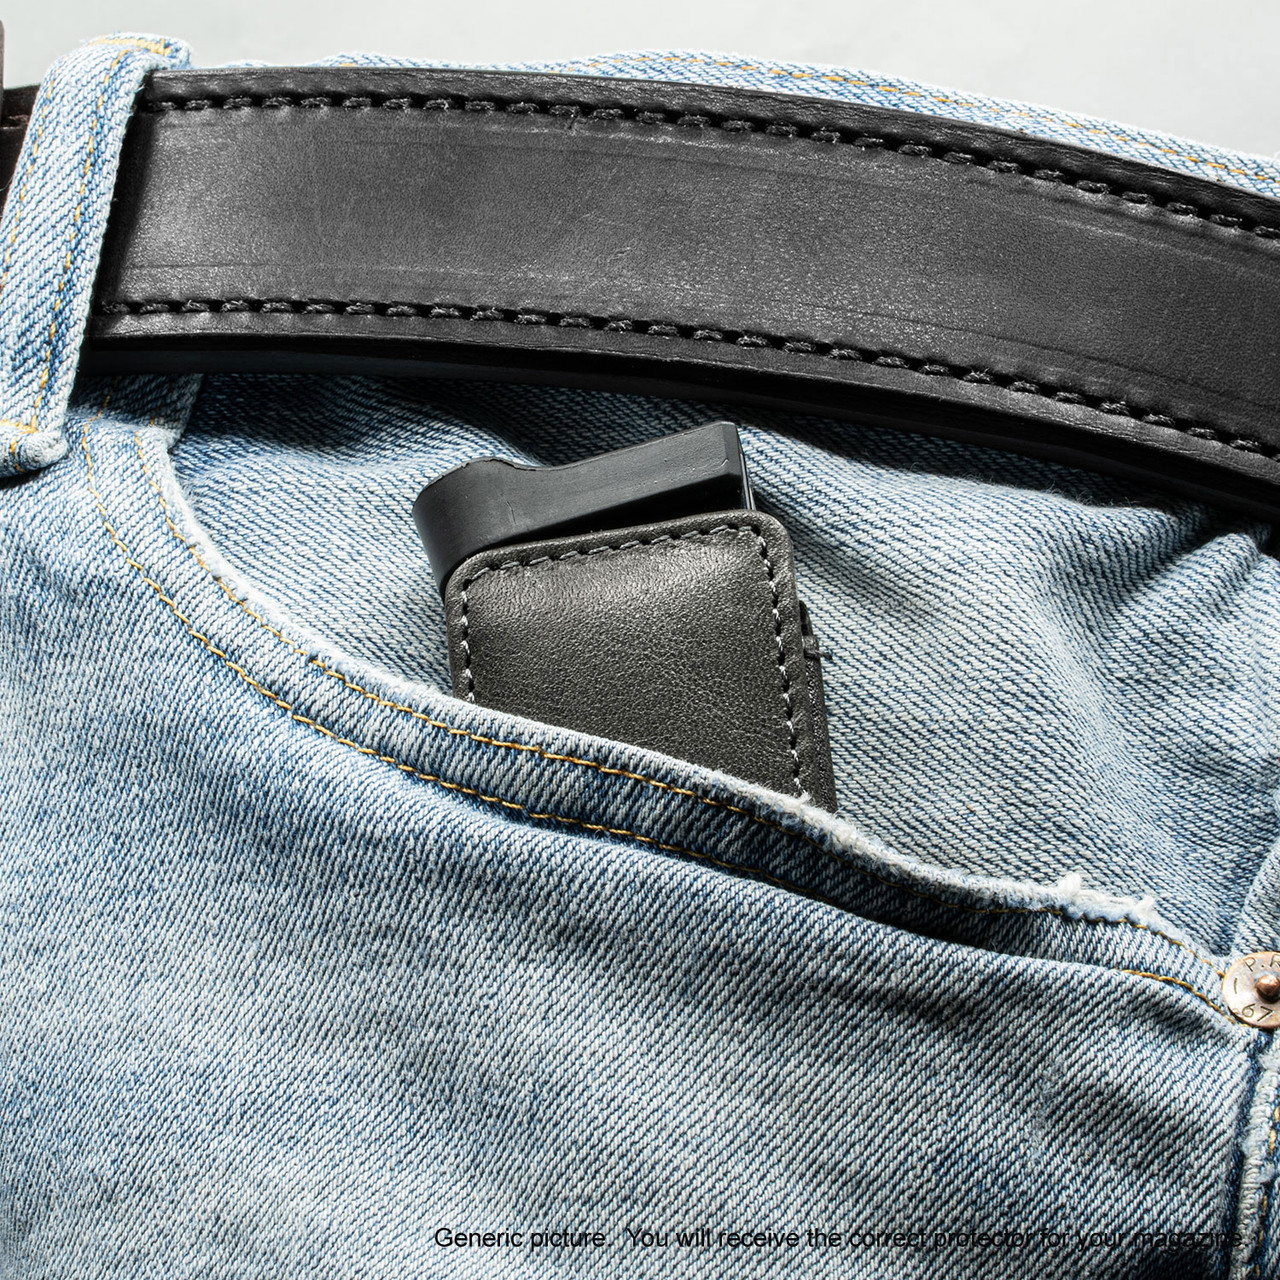 Ruger SR40c Black Freedom Magazine Pocket Protector